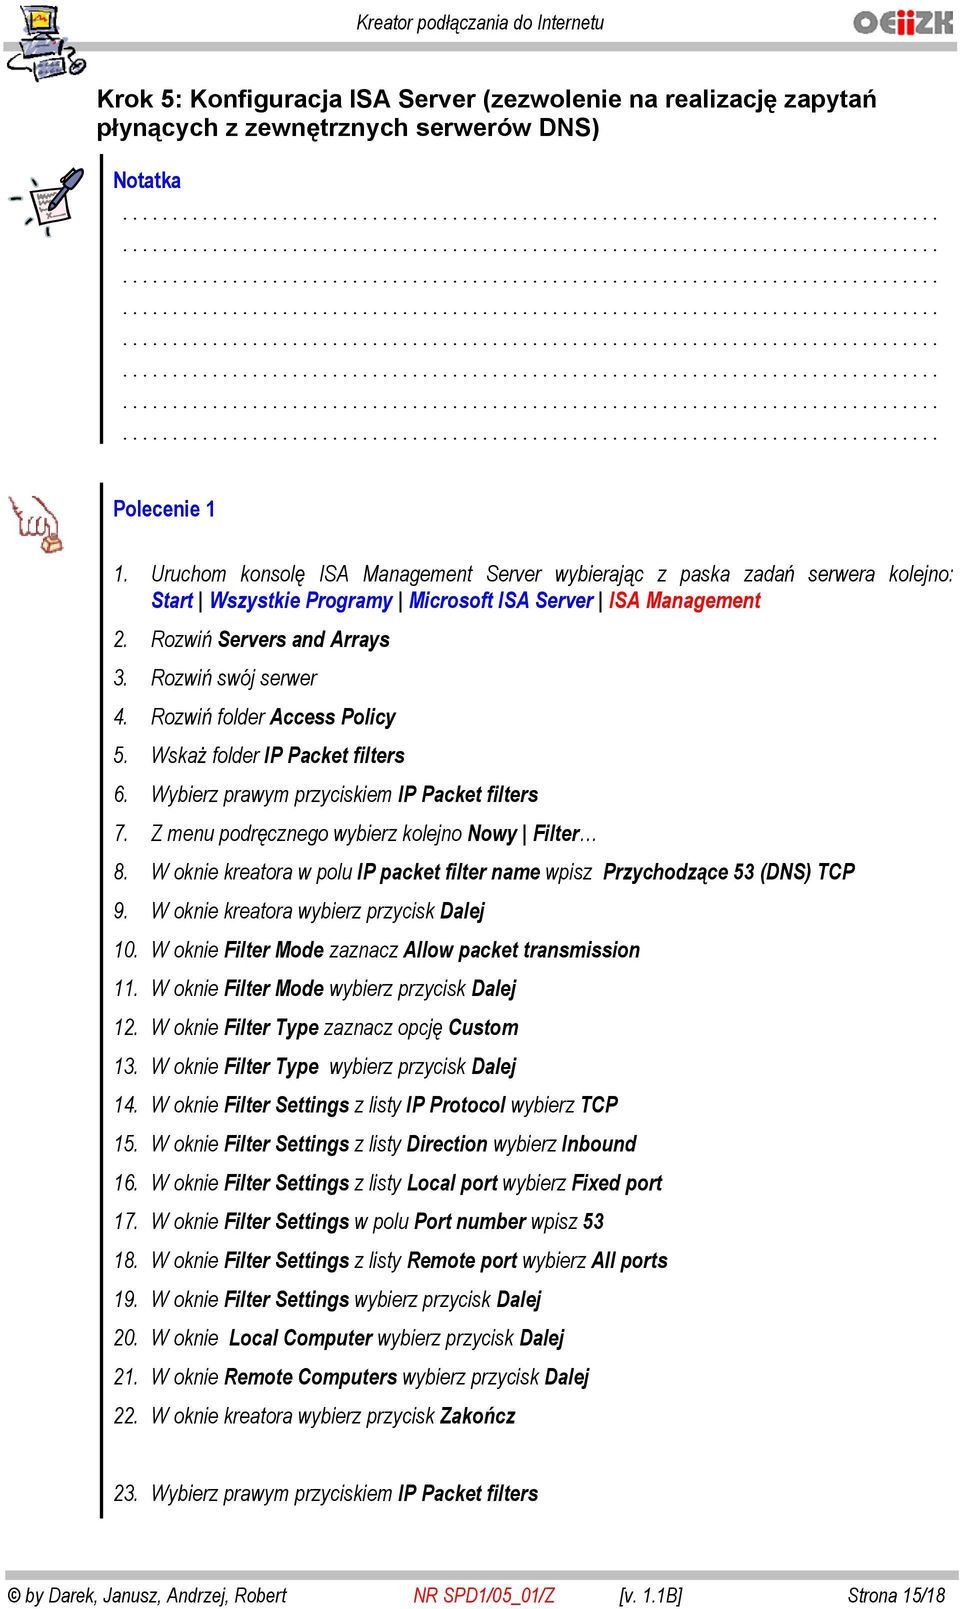 Rozwi folder Access Policy 5. Wska folder IP Packet filters 6. Wybierz prawym przyciskiem IP Packet filters 7. Z menu podr cznego wybierz kolejno Nowy Filter 8.